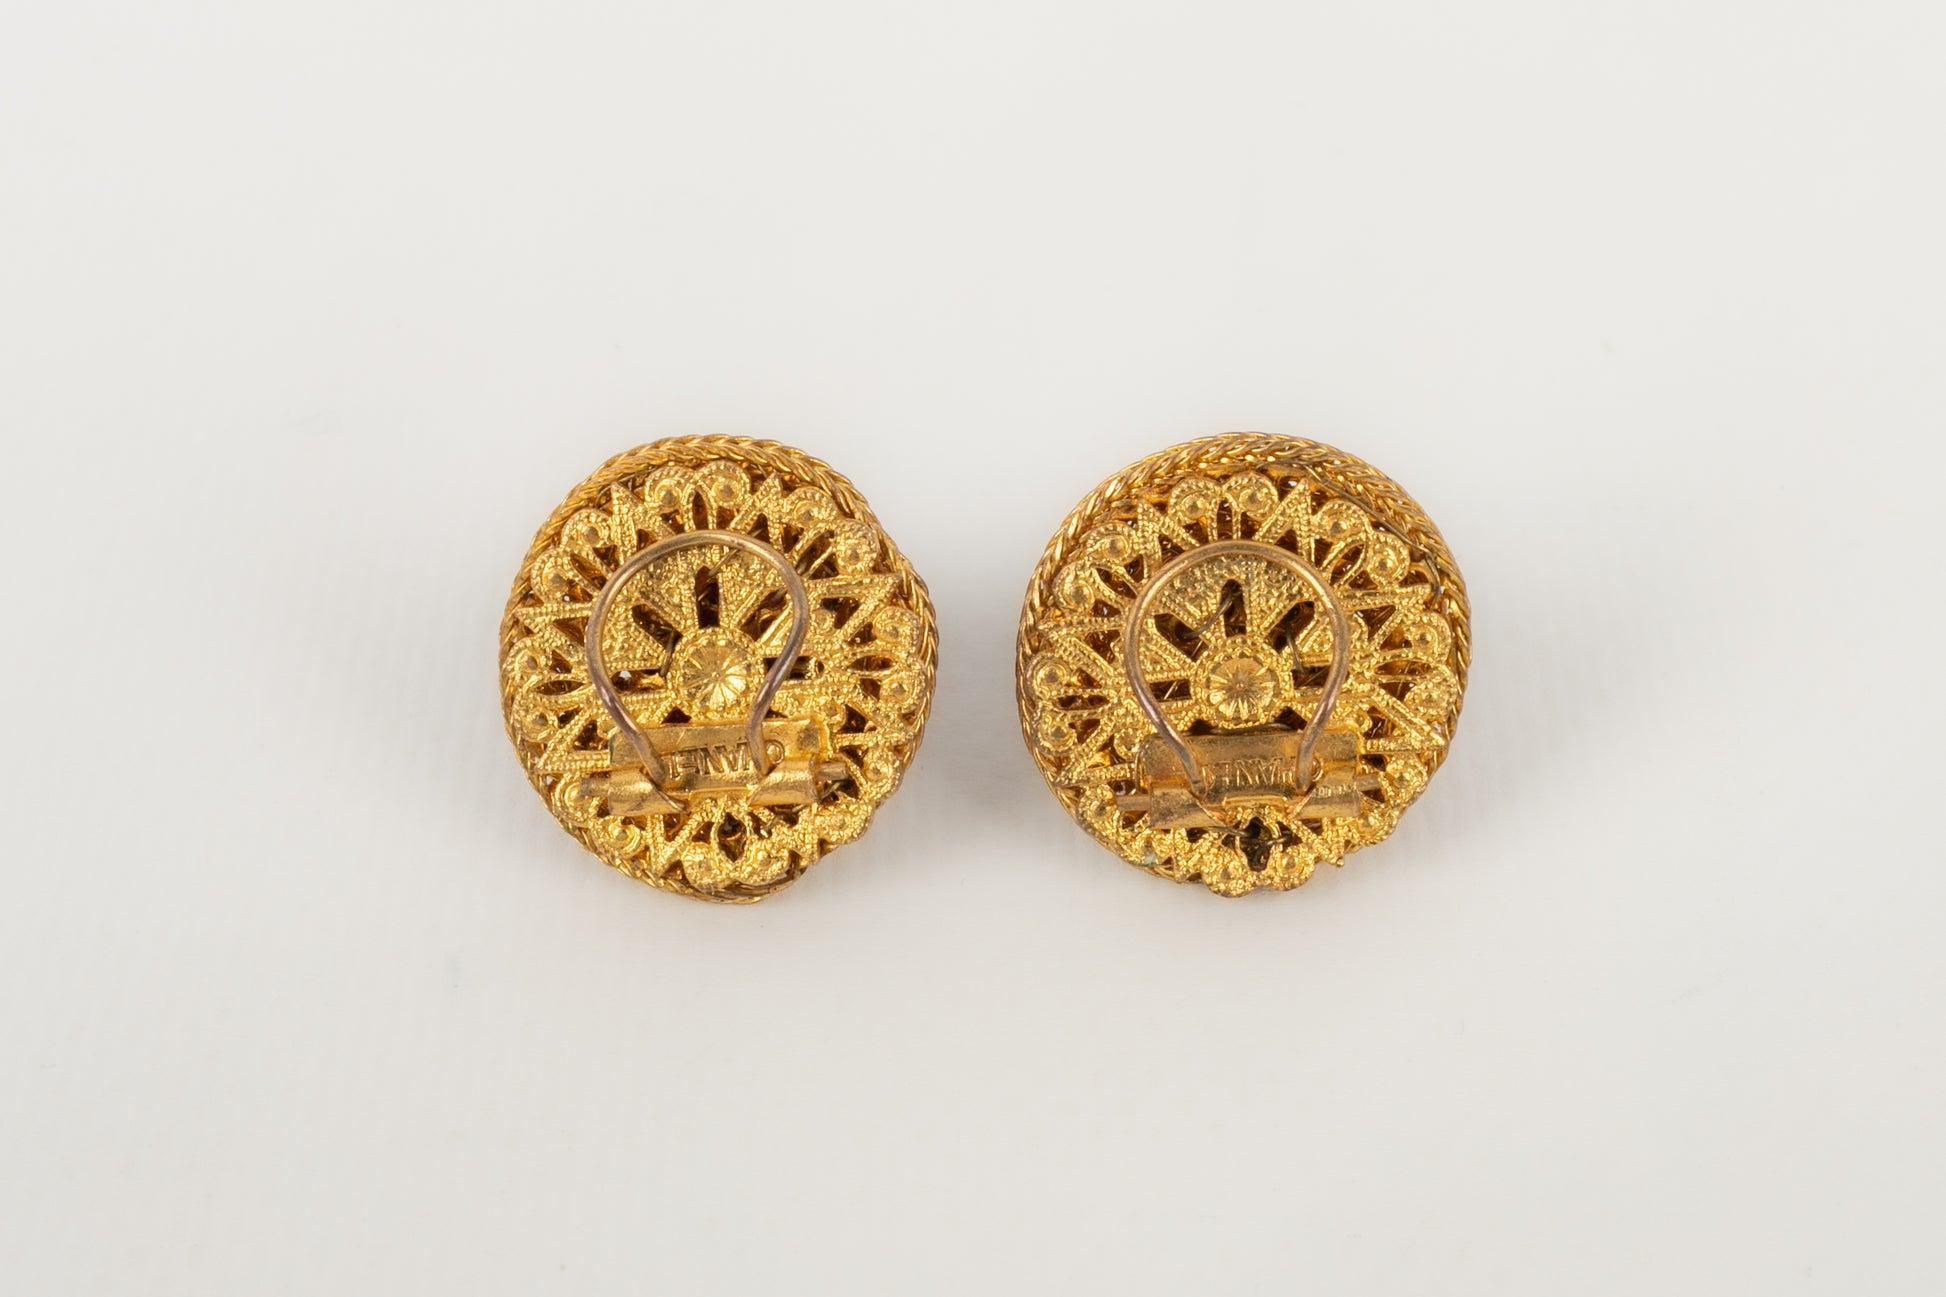 Chanel - Clip-Ohrringe mit zentralen Perlen, die mit Cabochons aus Glaspaste verziert und von einer goldenen Kette umgeben sind. Haute Couture-Schmuck aus der Coco-Ära, entworfen vom Atelier Rousselet.

Zusätzliche Informationen:
Zustand: Sehr guter